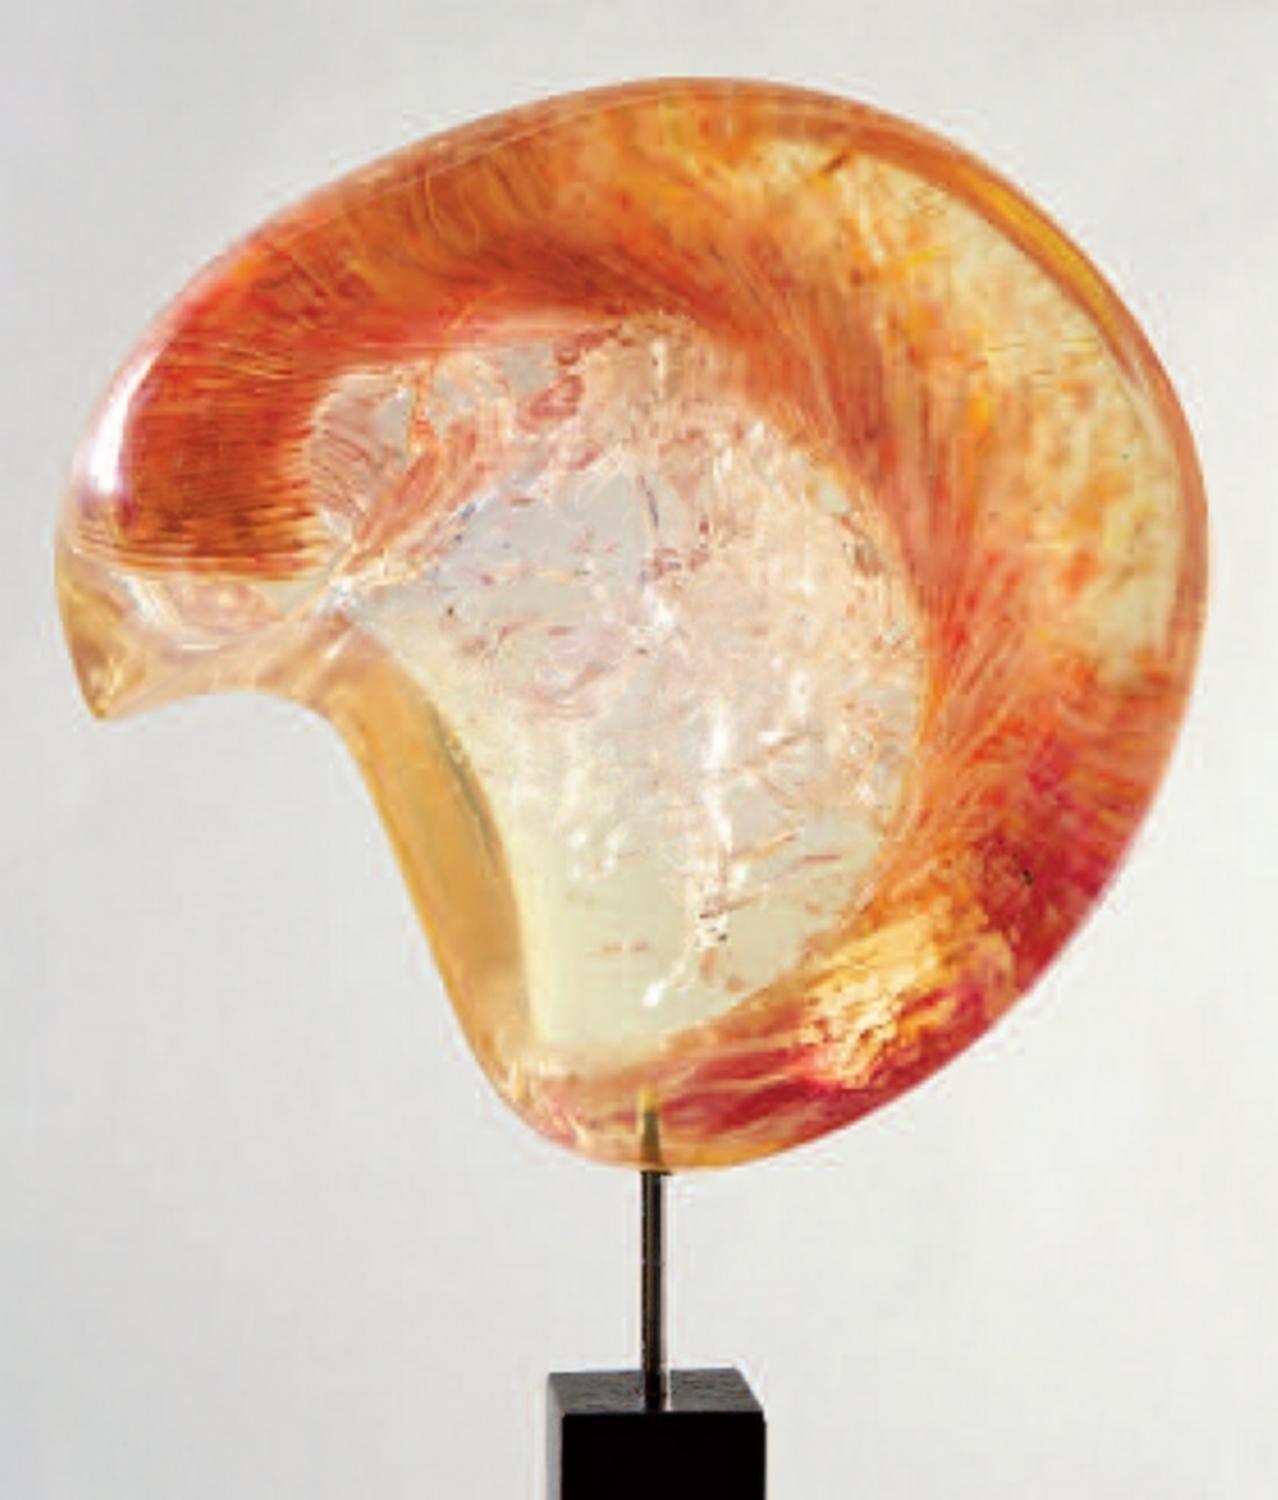 Skulptur von Gilles Charbin. Einzigartiges Stück. Unterzeichnet und datiert.

Zusammensetzung:
Harz, fraktales Harz,
Plexiglas, Oxyde,
Pigmente 

